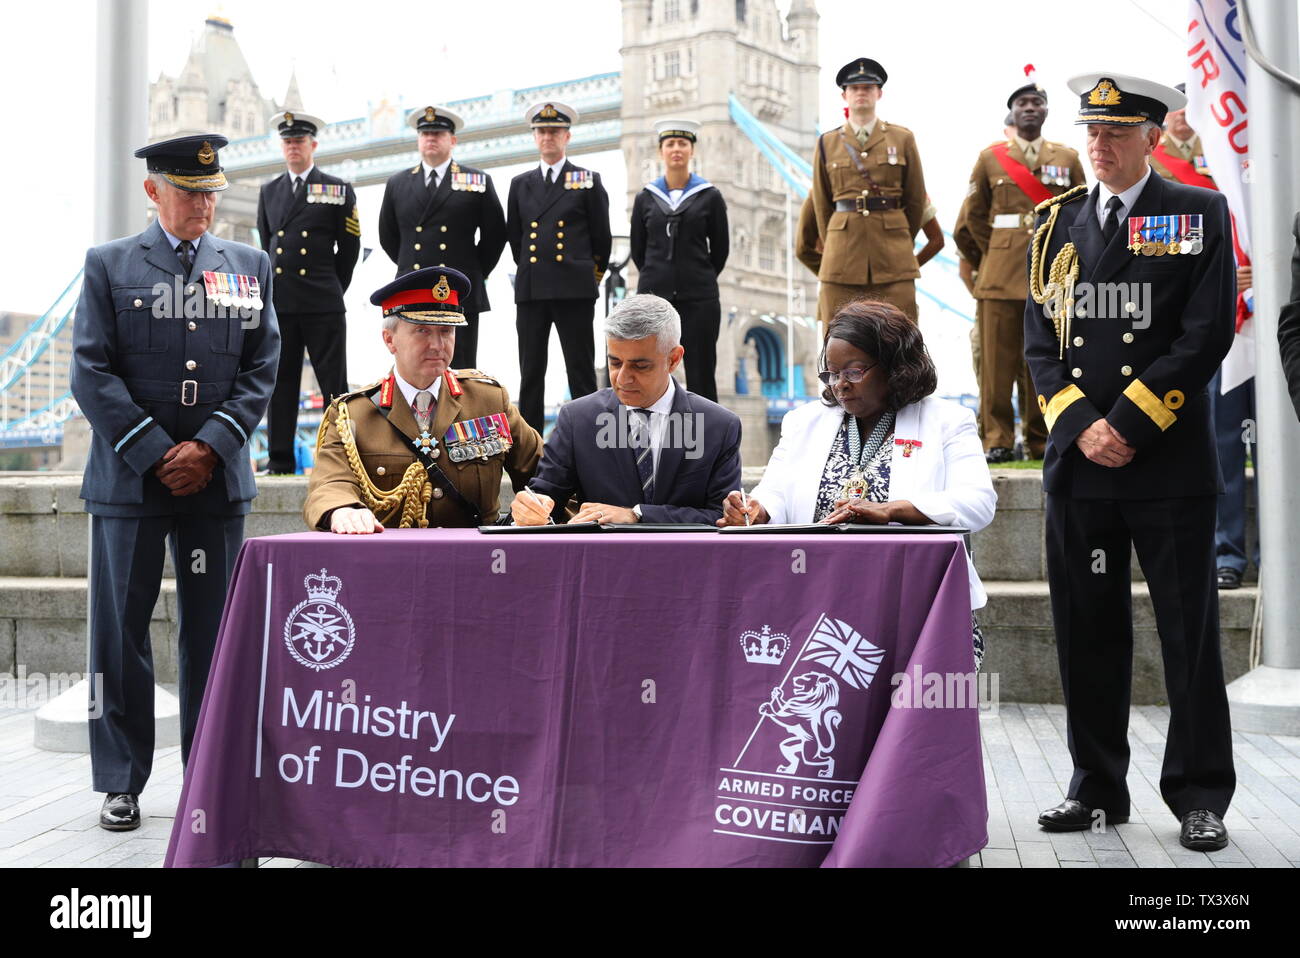 Alcalde de Londres Sadiq Khan (centro), firma el Pacto de las Fuerzas Armadas durante una ceremonia de izamiento de la bandera en el City Hall, Londres, para mostrar su apoyo a los hombres y mujeres que componen la comunidad de las fuerzas armadas antes de día de las Fuerzas Armadas. Foto de stock